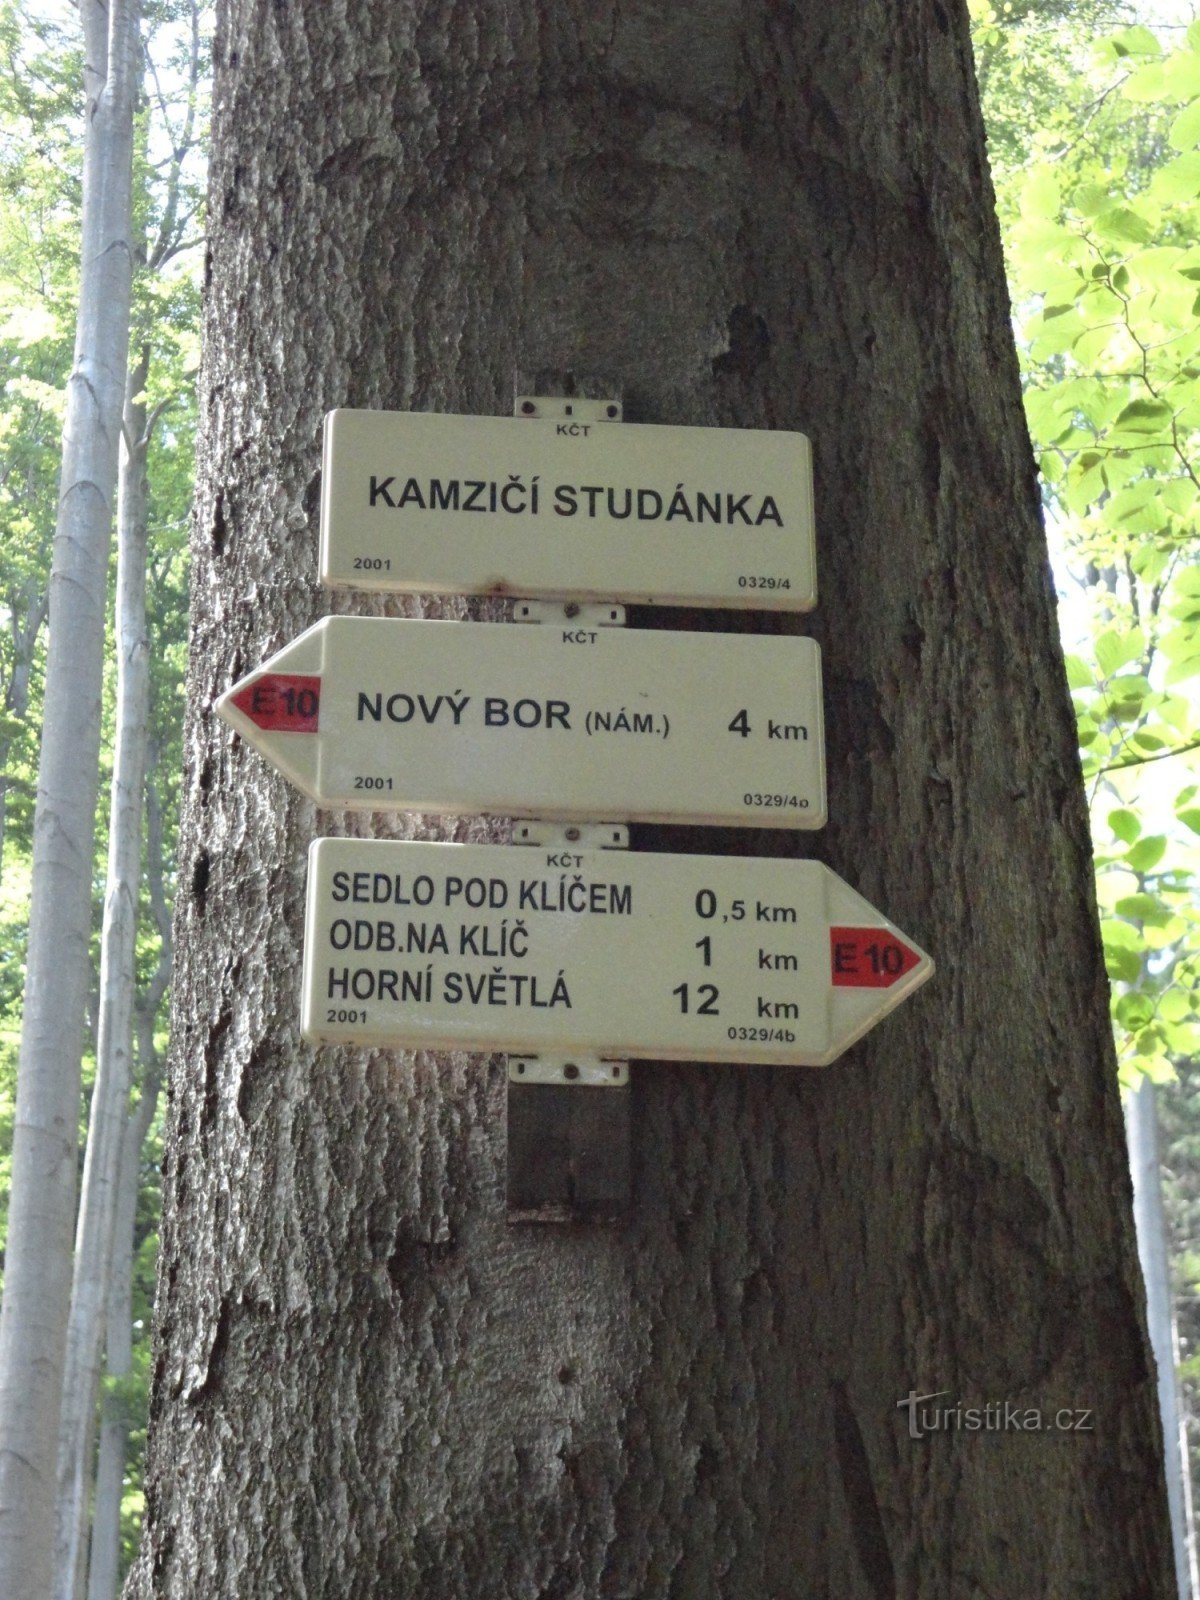 răscruce turistică la fântâna Kamzičí